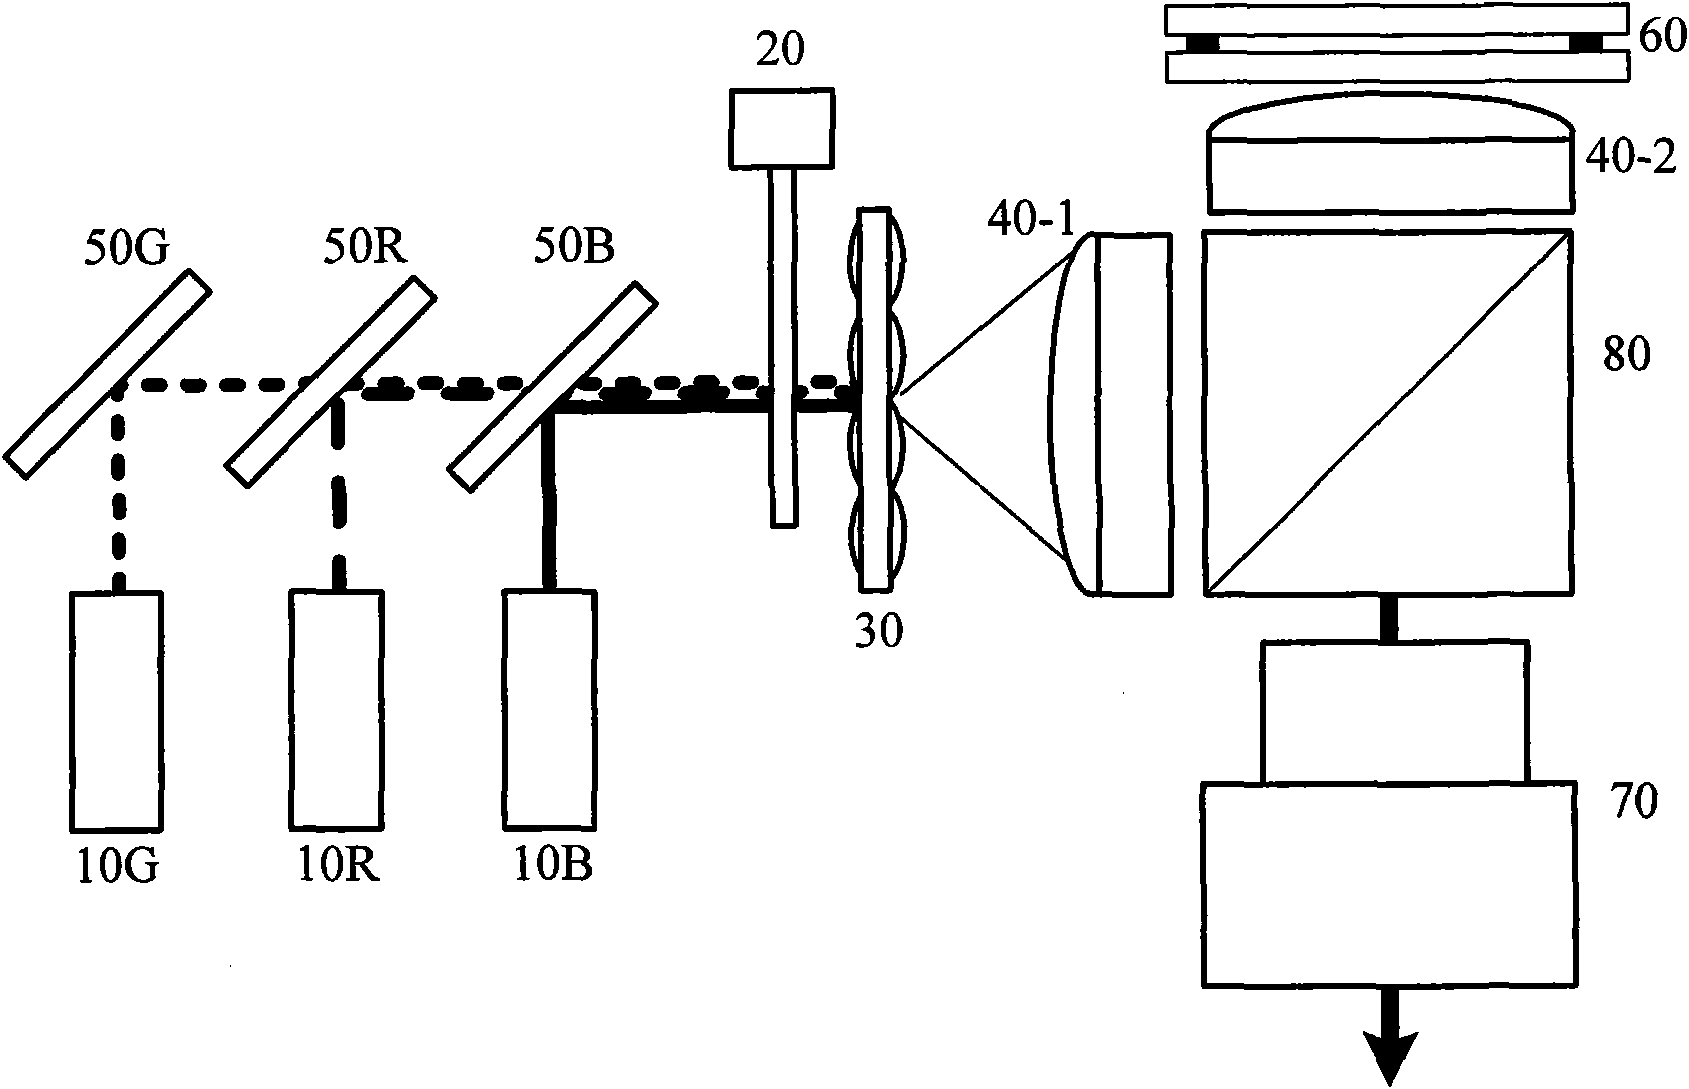 Reflection-type optical engine